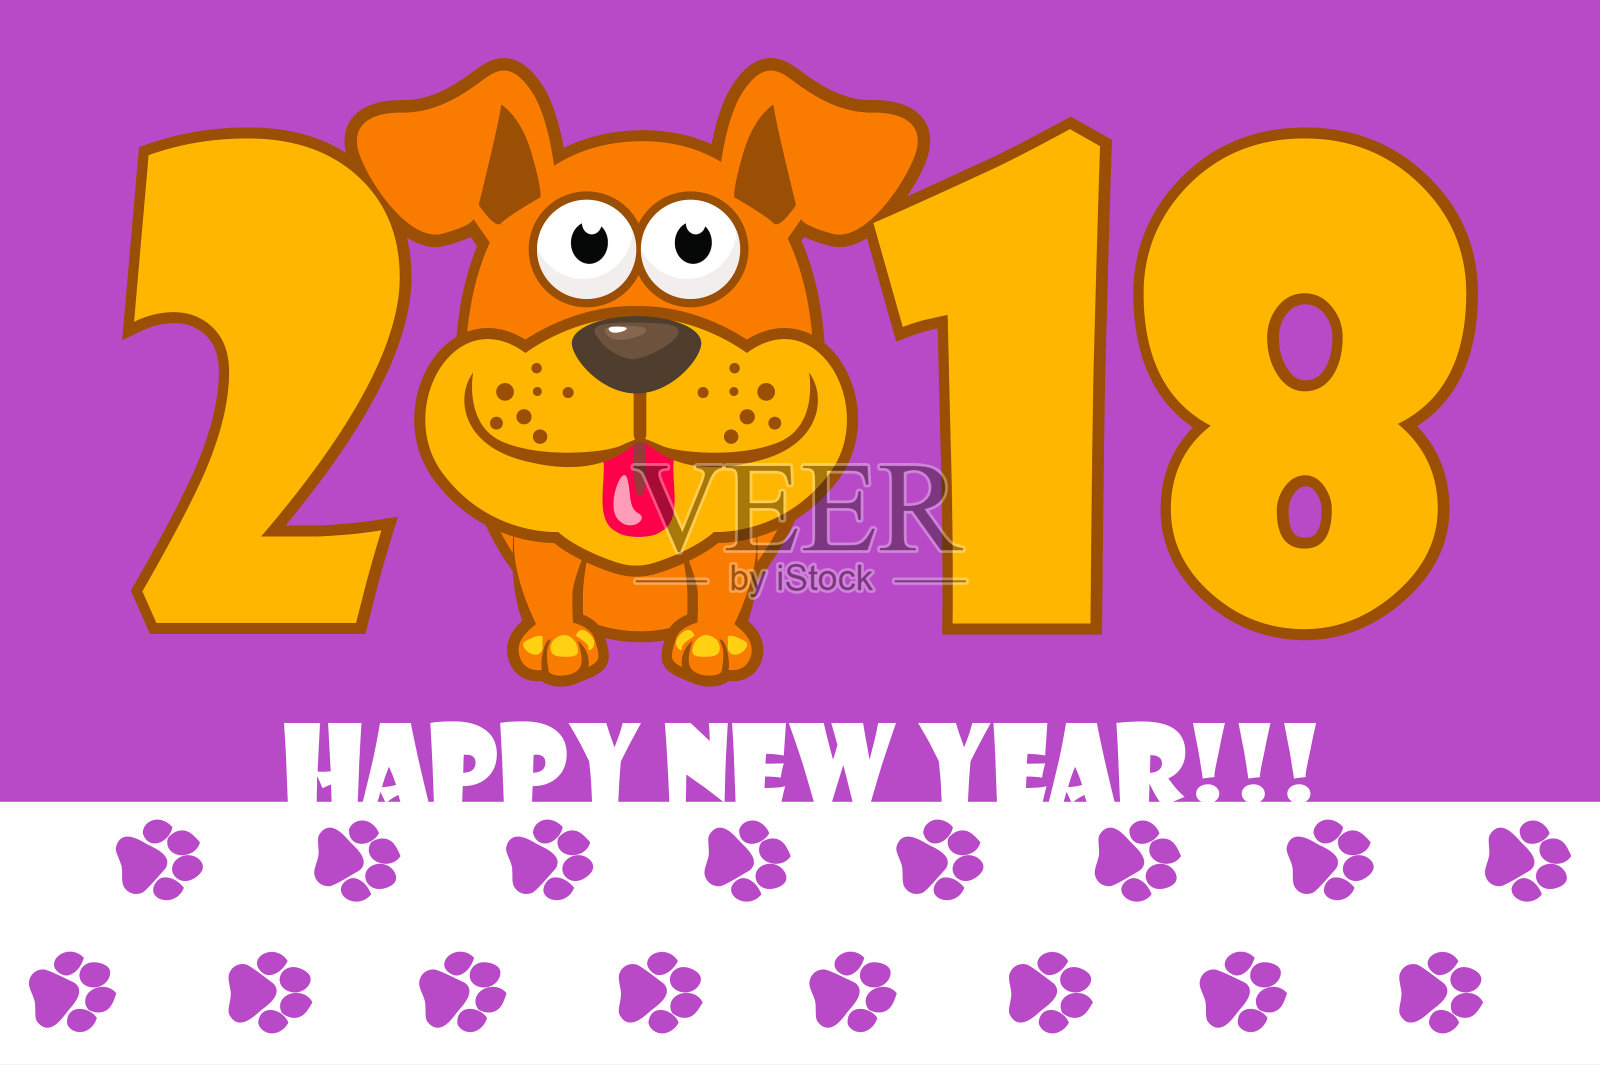 新年快乐。2018年是黄土狗。卡通狗。日历的封面设计模板素材